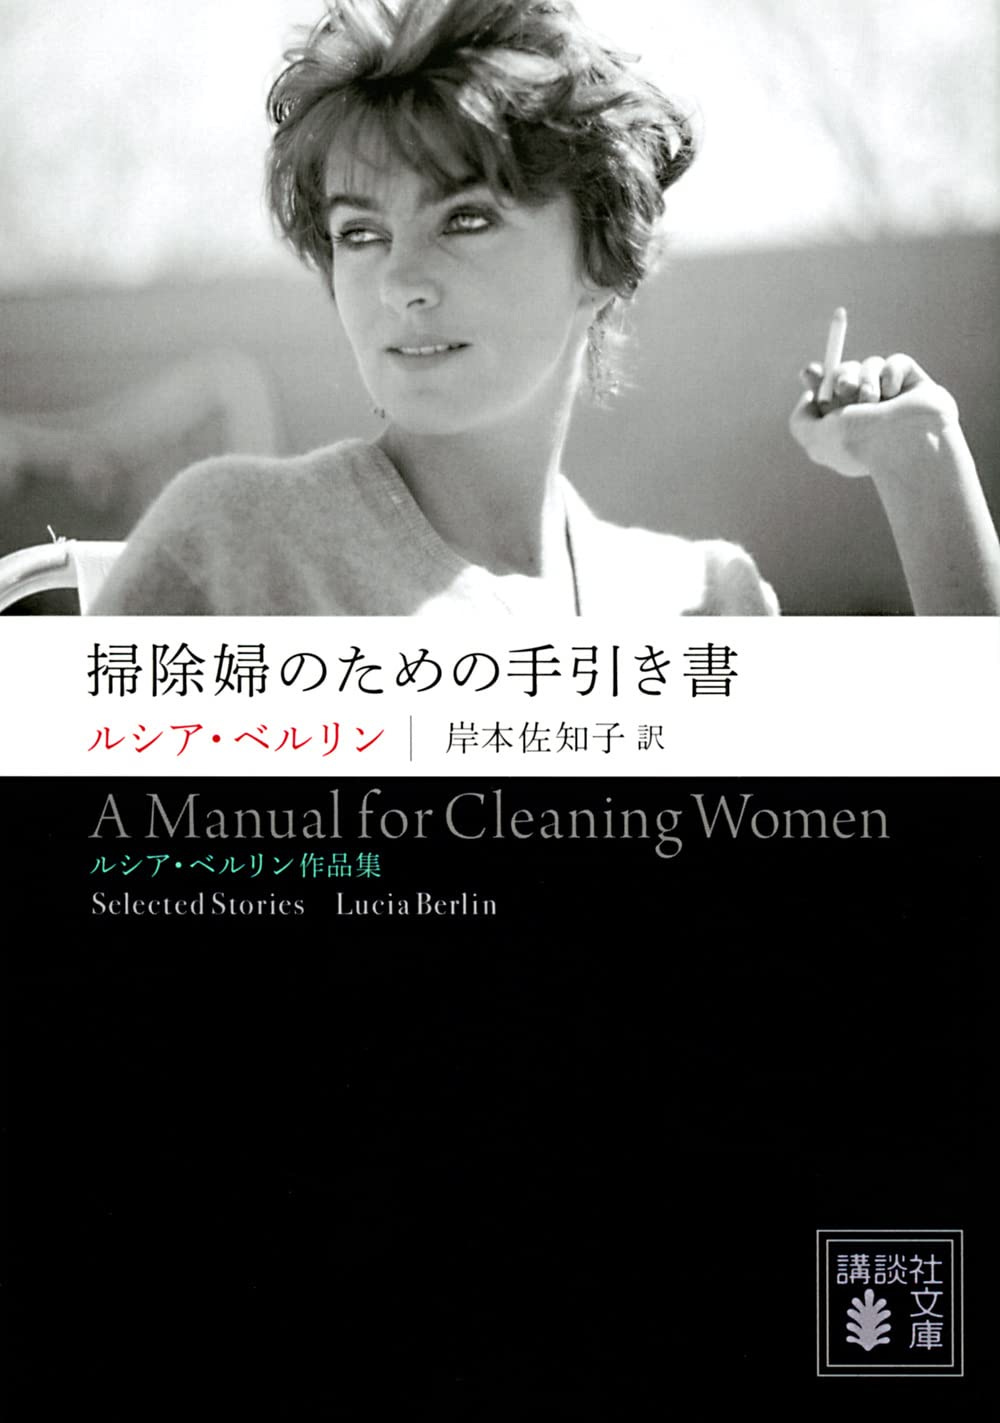 Amazon.co.jp - 掃除婦のための手引き書 ――ルシア・ベルリン作品集 (講談社文庫) | ルシア・ベルリン, 岸本 佐知子 |本 | 通販